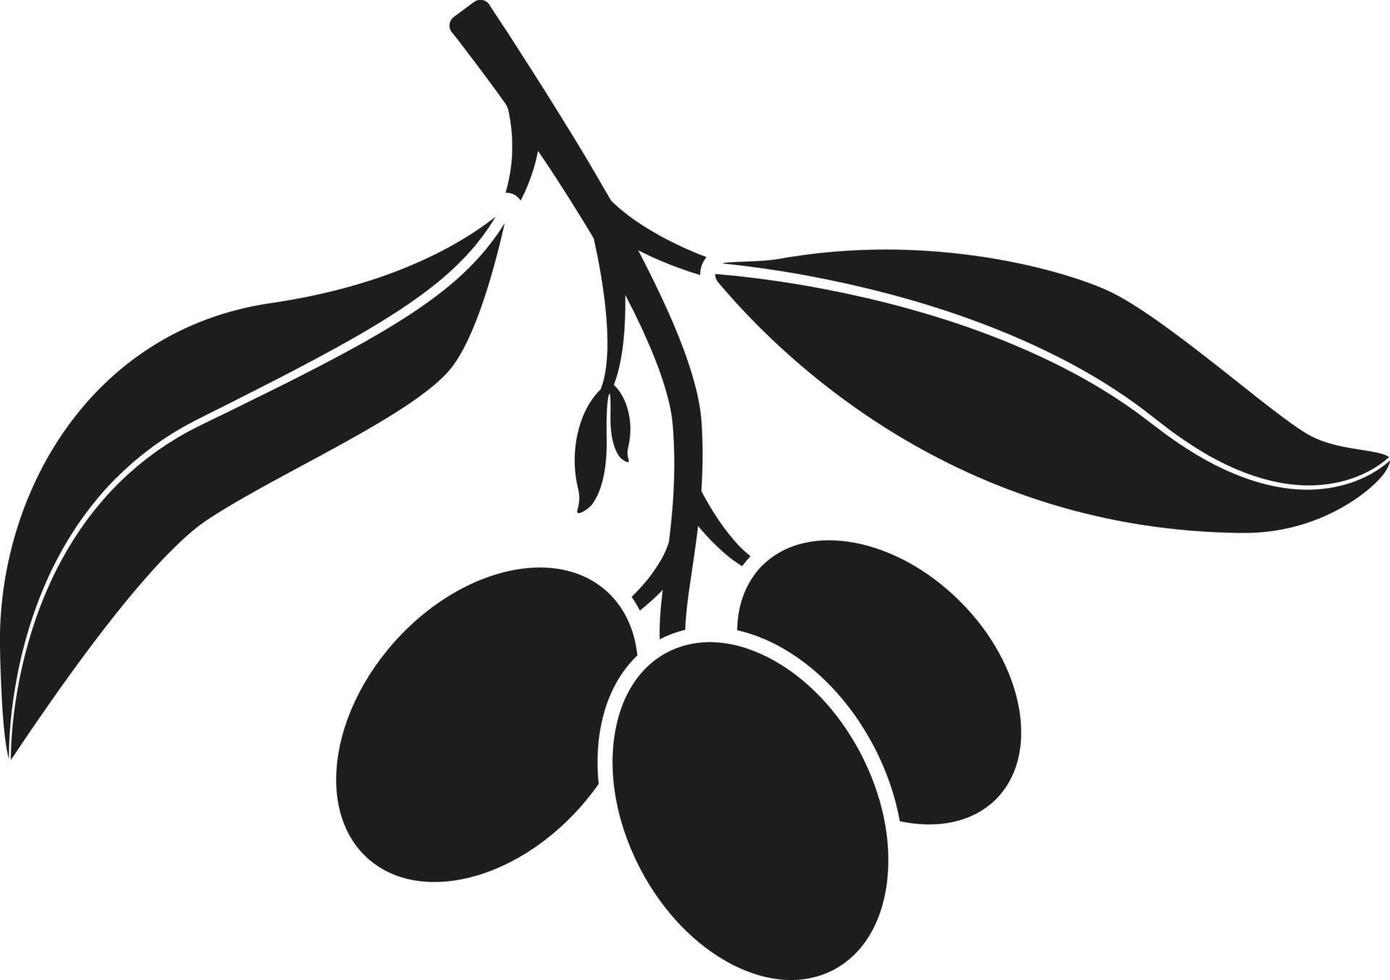 etiqueta o logotipo de aceite de oliva para tienda agrícola, mercado. rama de olivo con silueta de hojas y aceitunas. emblema del aceite de oliva orgánico. ilustración vectorial aislado sobre fondo blanco. vector